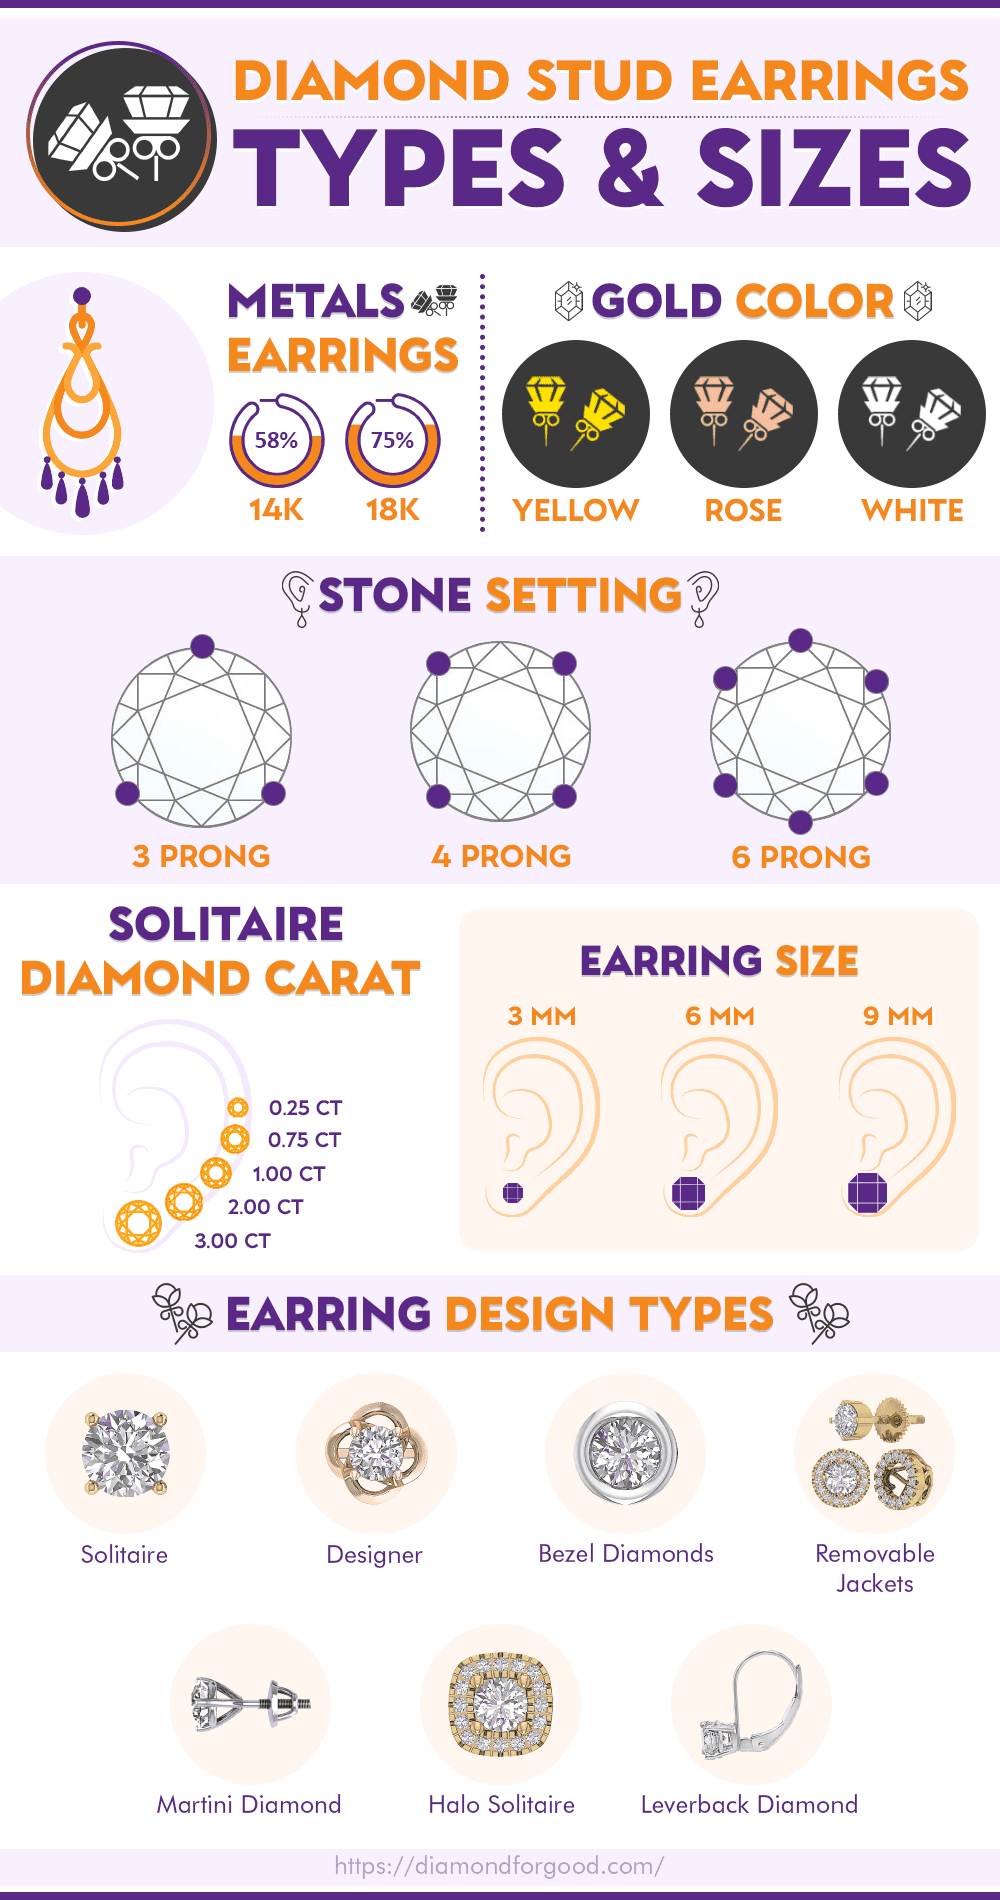 Diamond Stud Earrings Size & Types